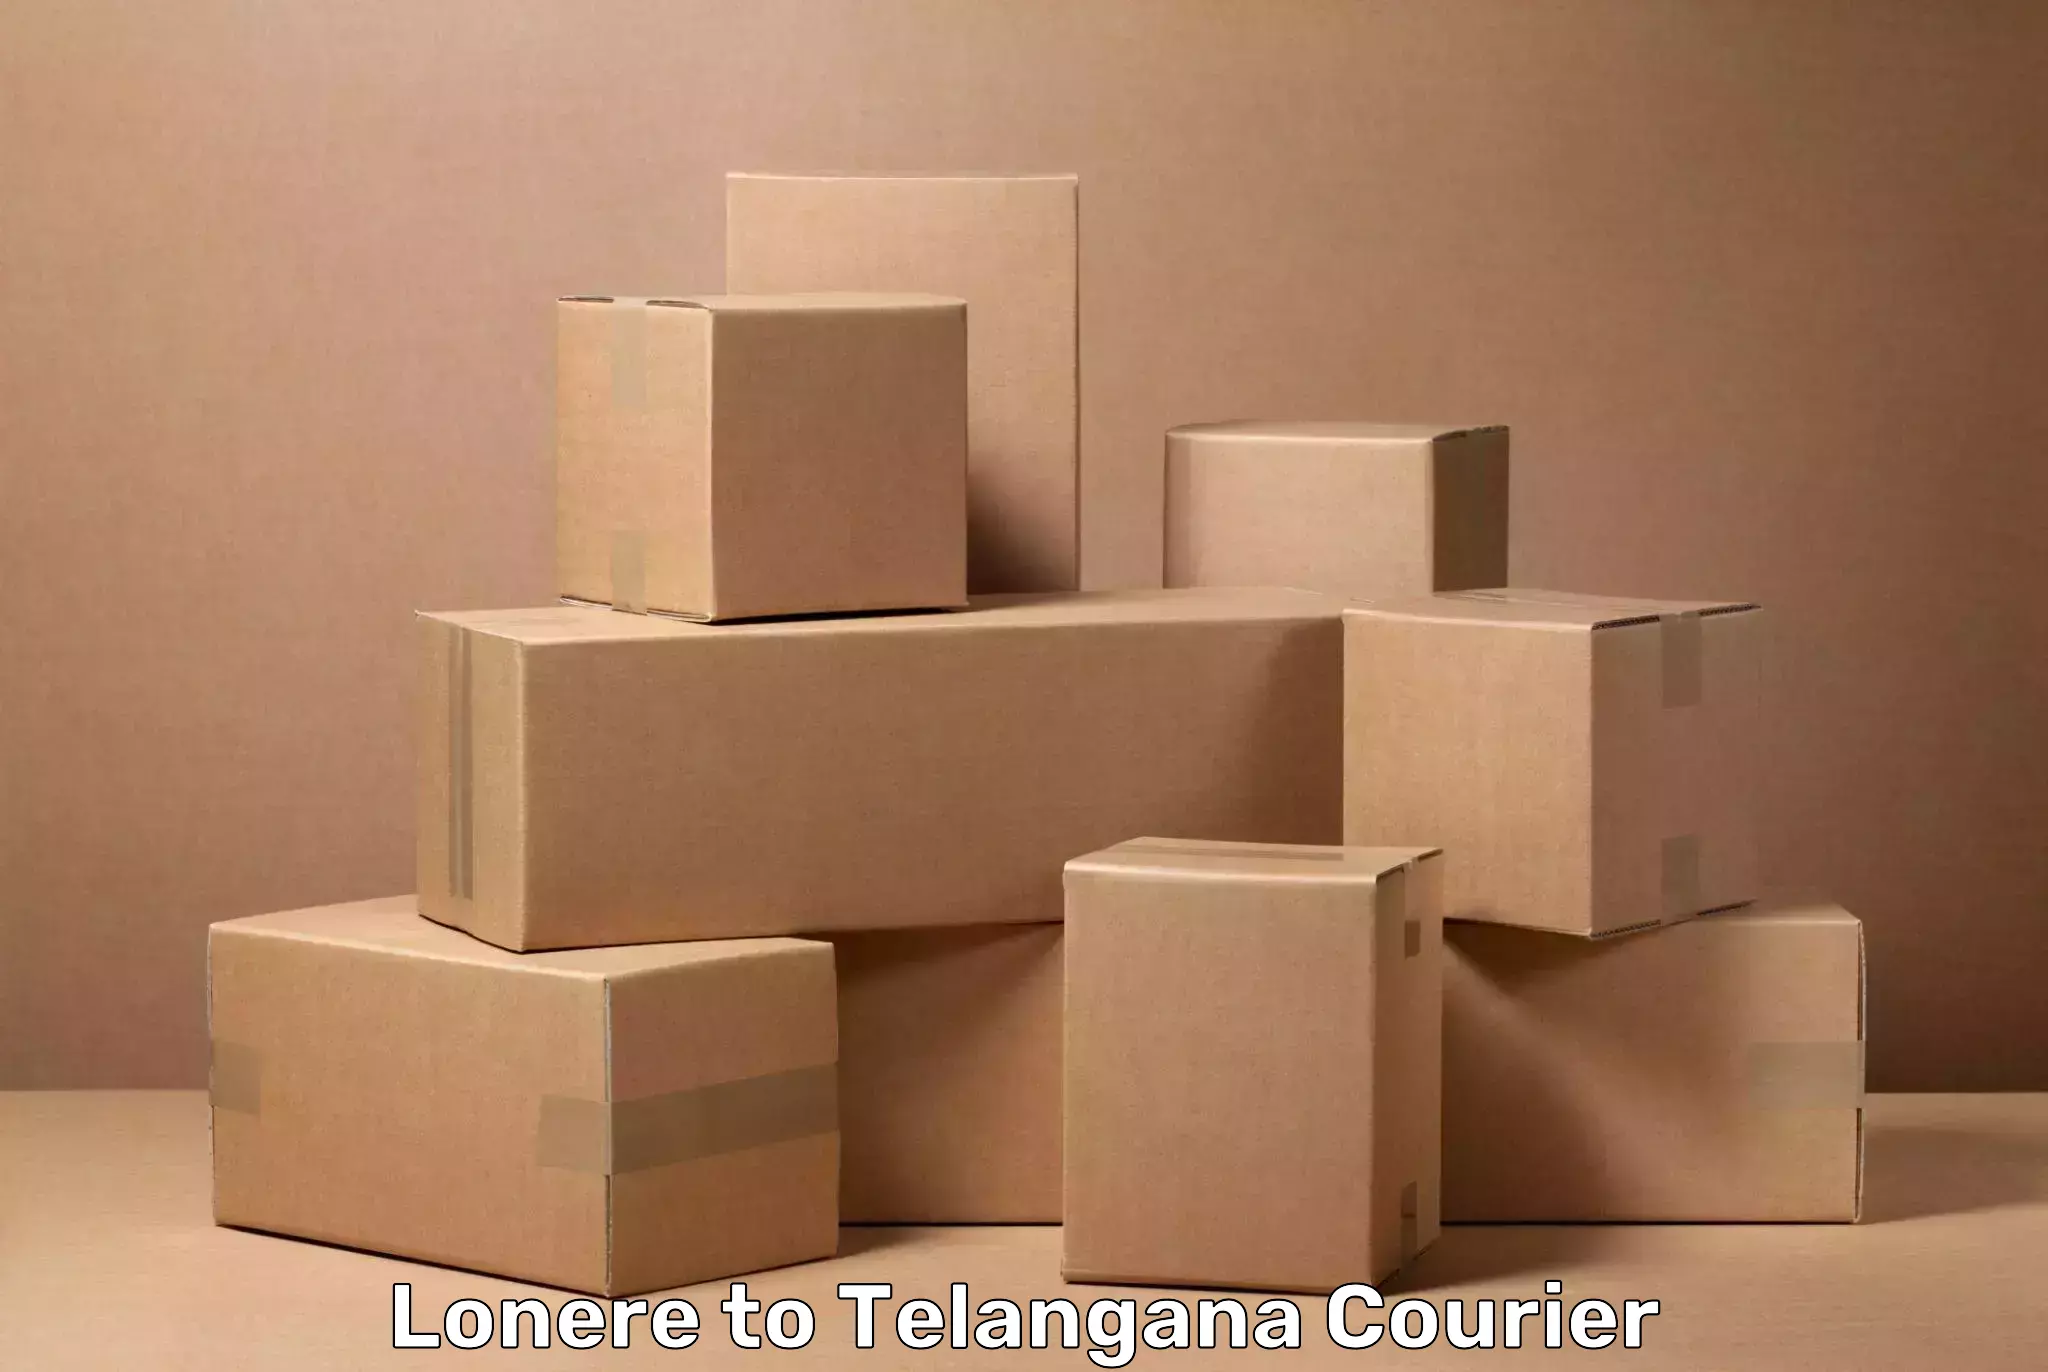 Luggage forwarding service Lonere to Telangana